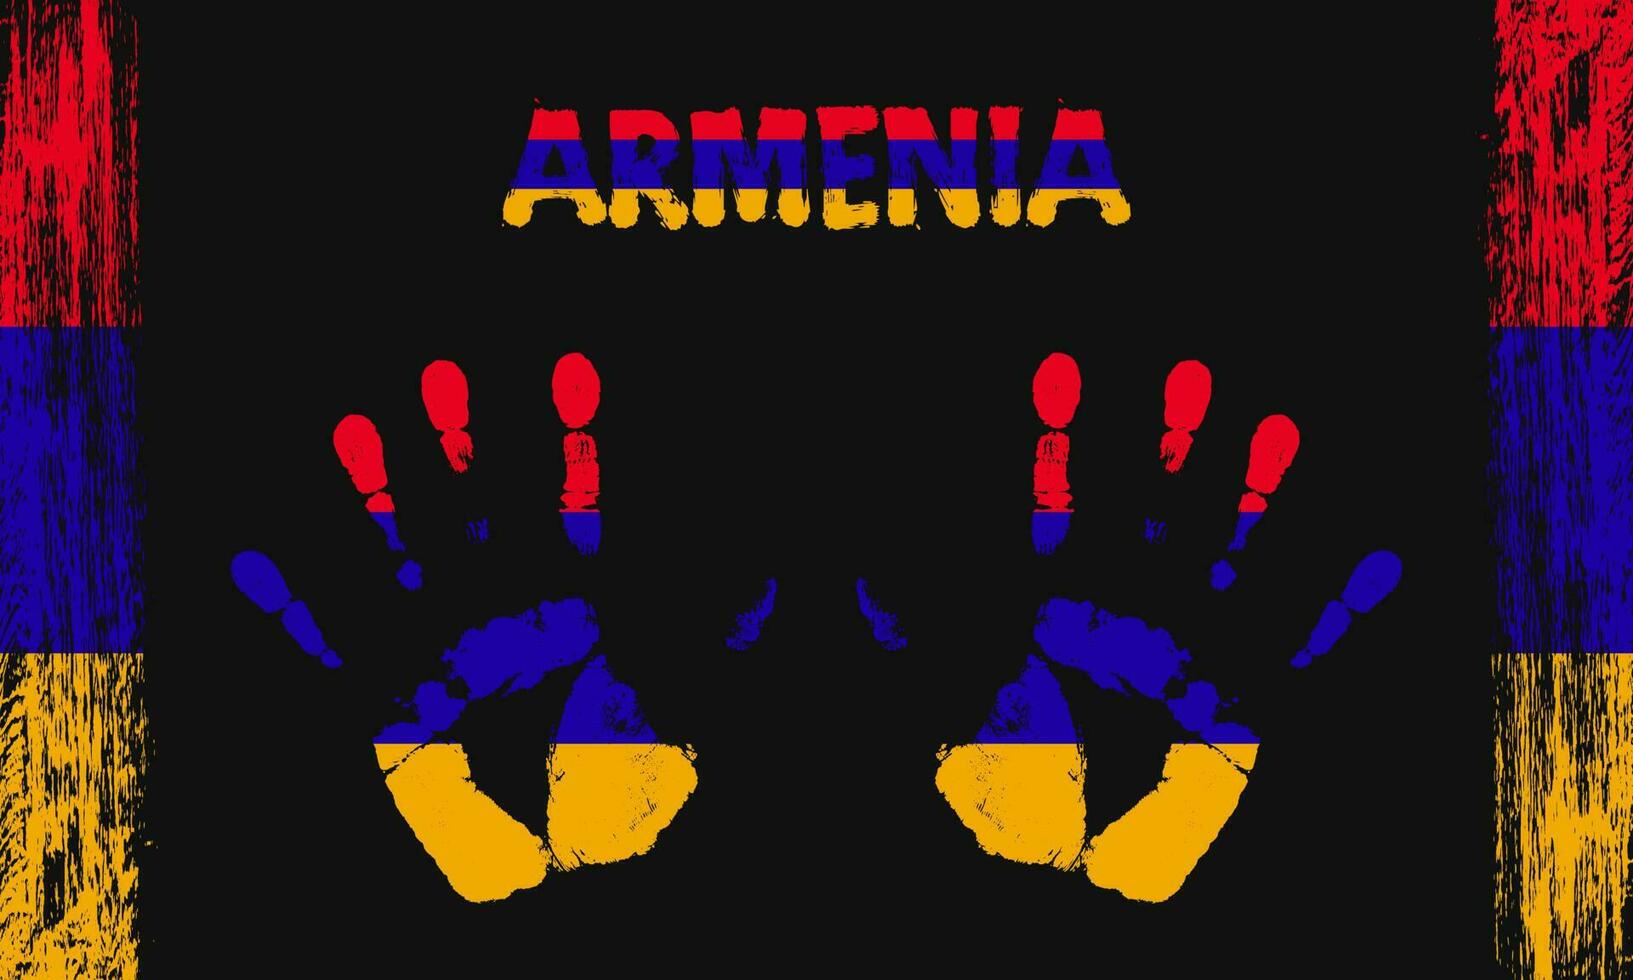 vector bandera de Armenia con un palma